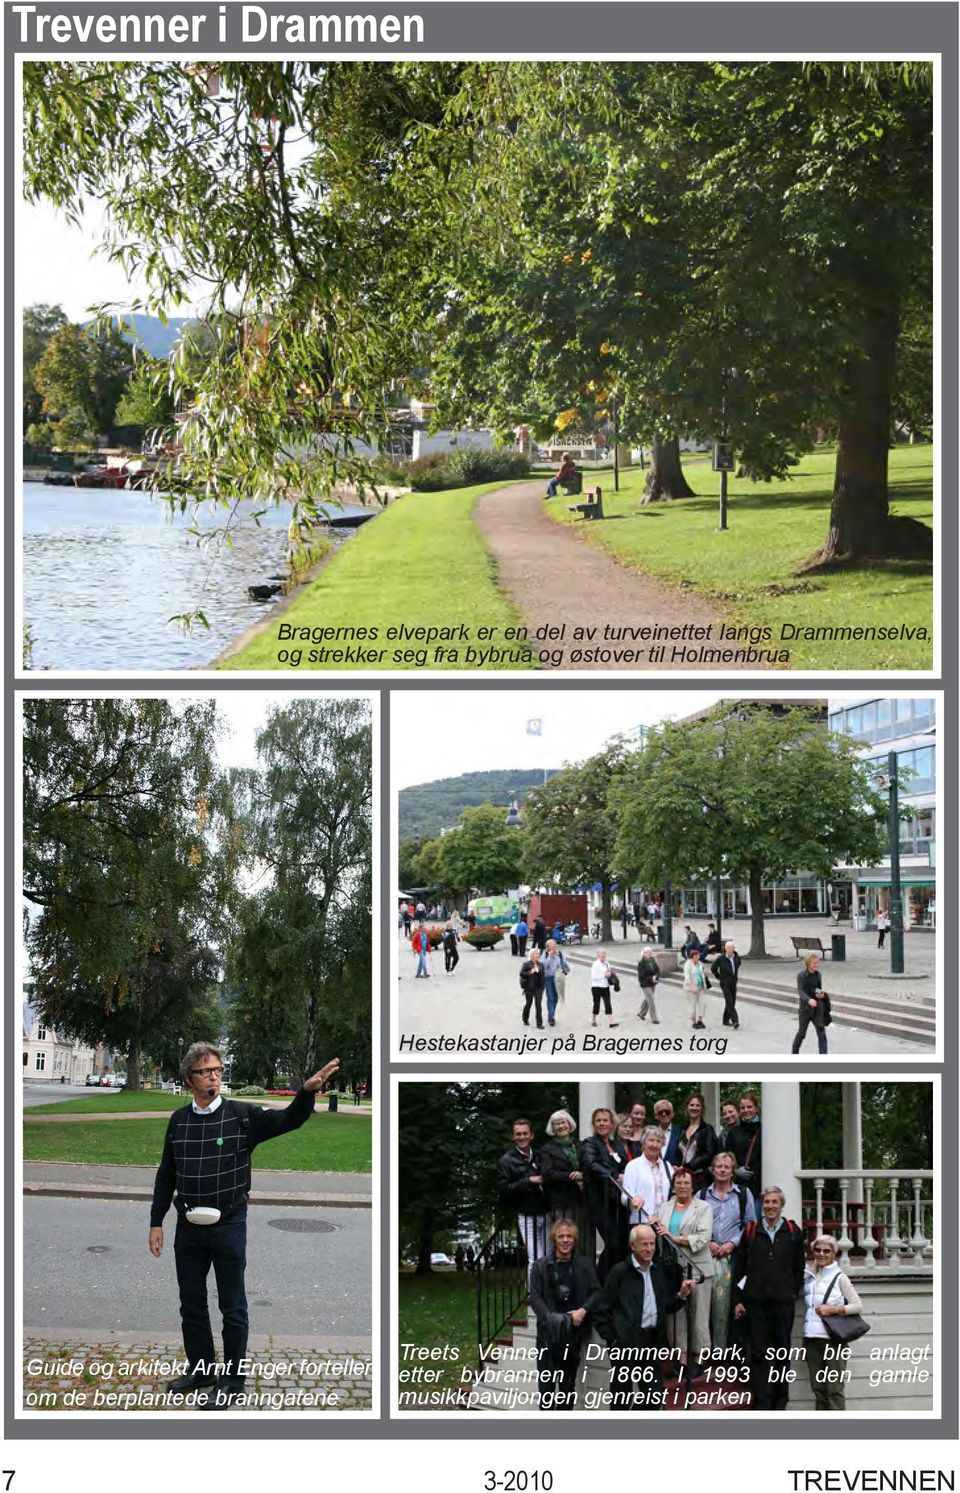 Enger forteller om de berplantede branngatene Treets Venner i Drammen park, som ble anlagt etter